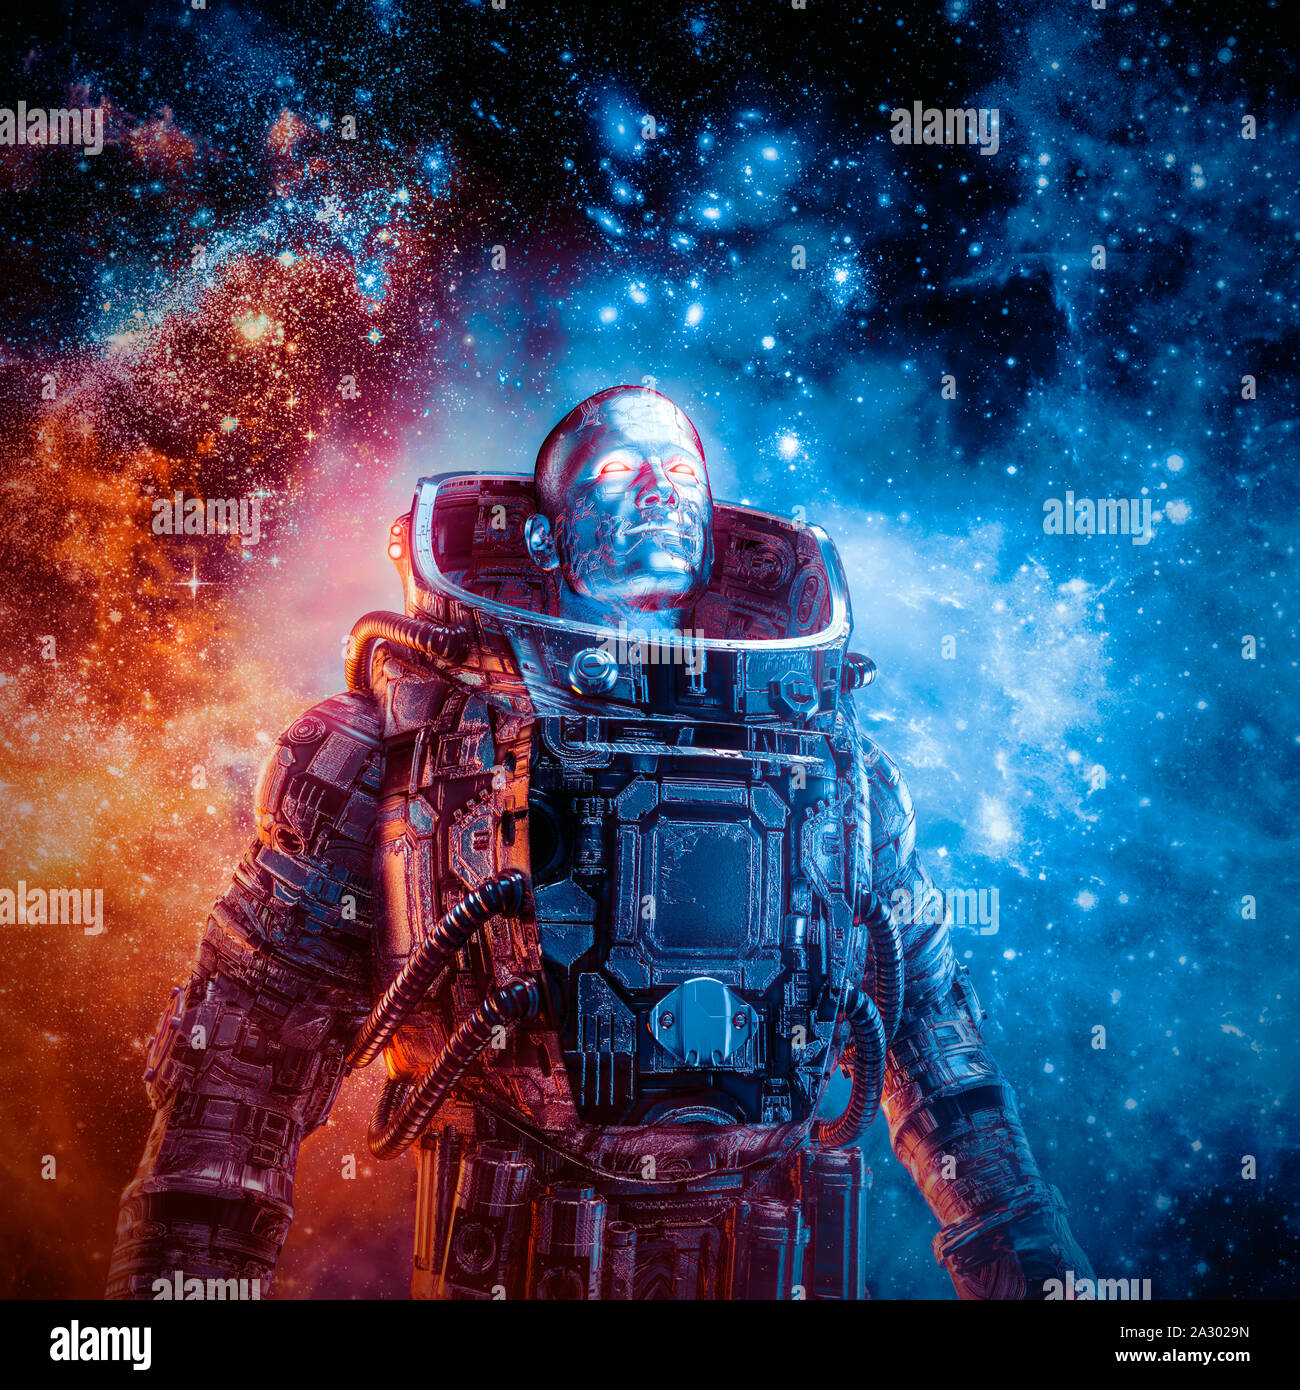 Tra le nuove frontiere / 3D illustrazione di fantascienza scena con eroica astronauta robotico circondato da galassie incandescente nello spazio esterno Foto Stock